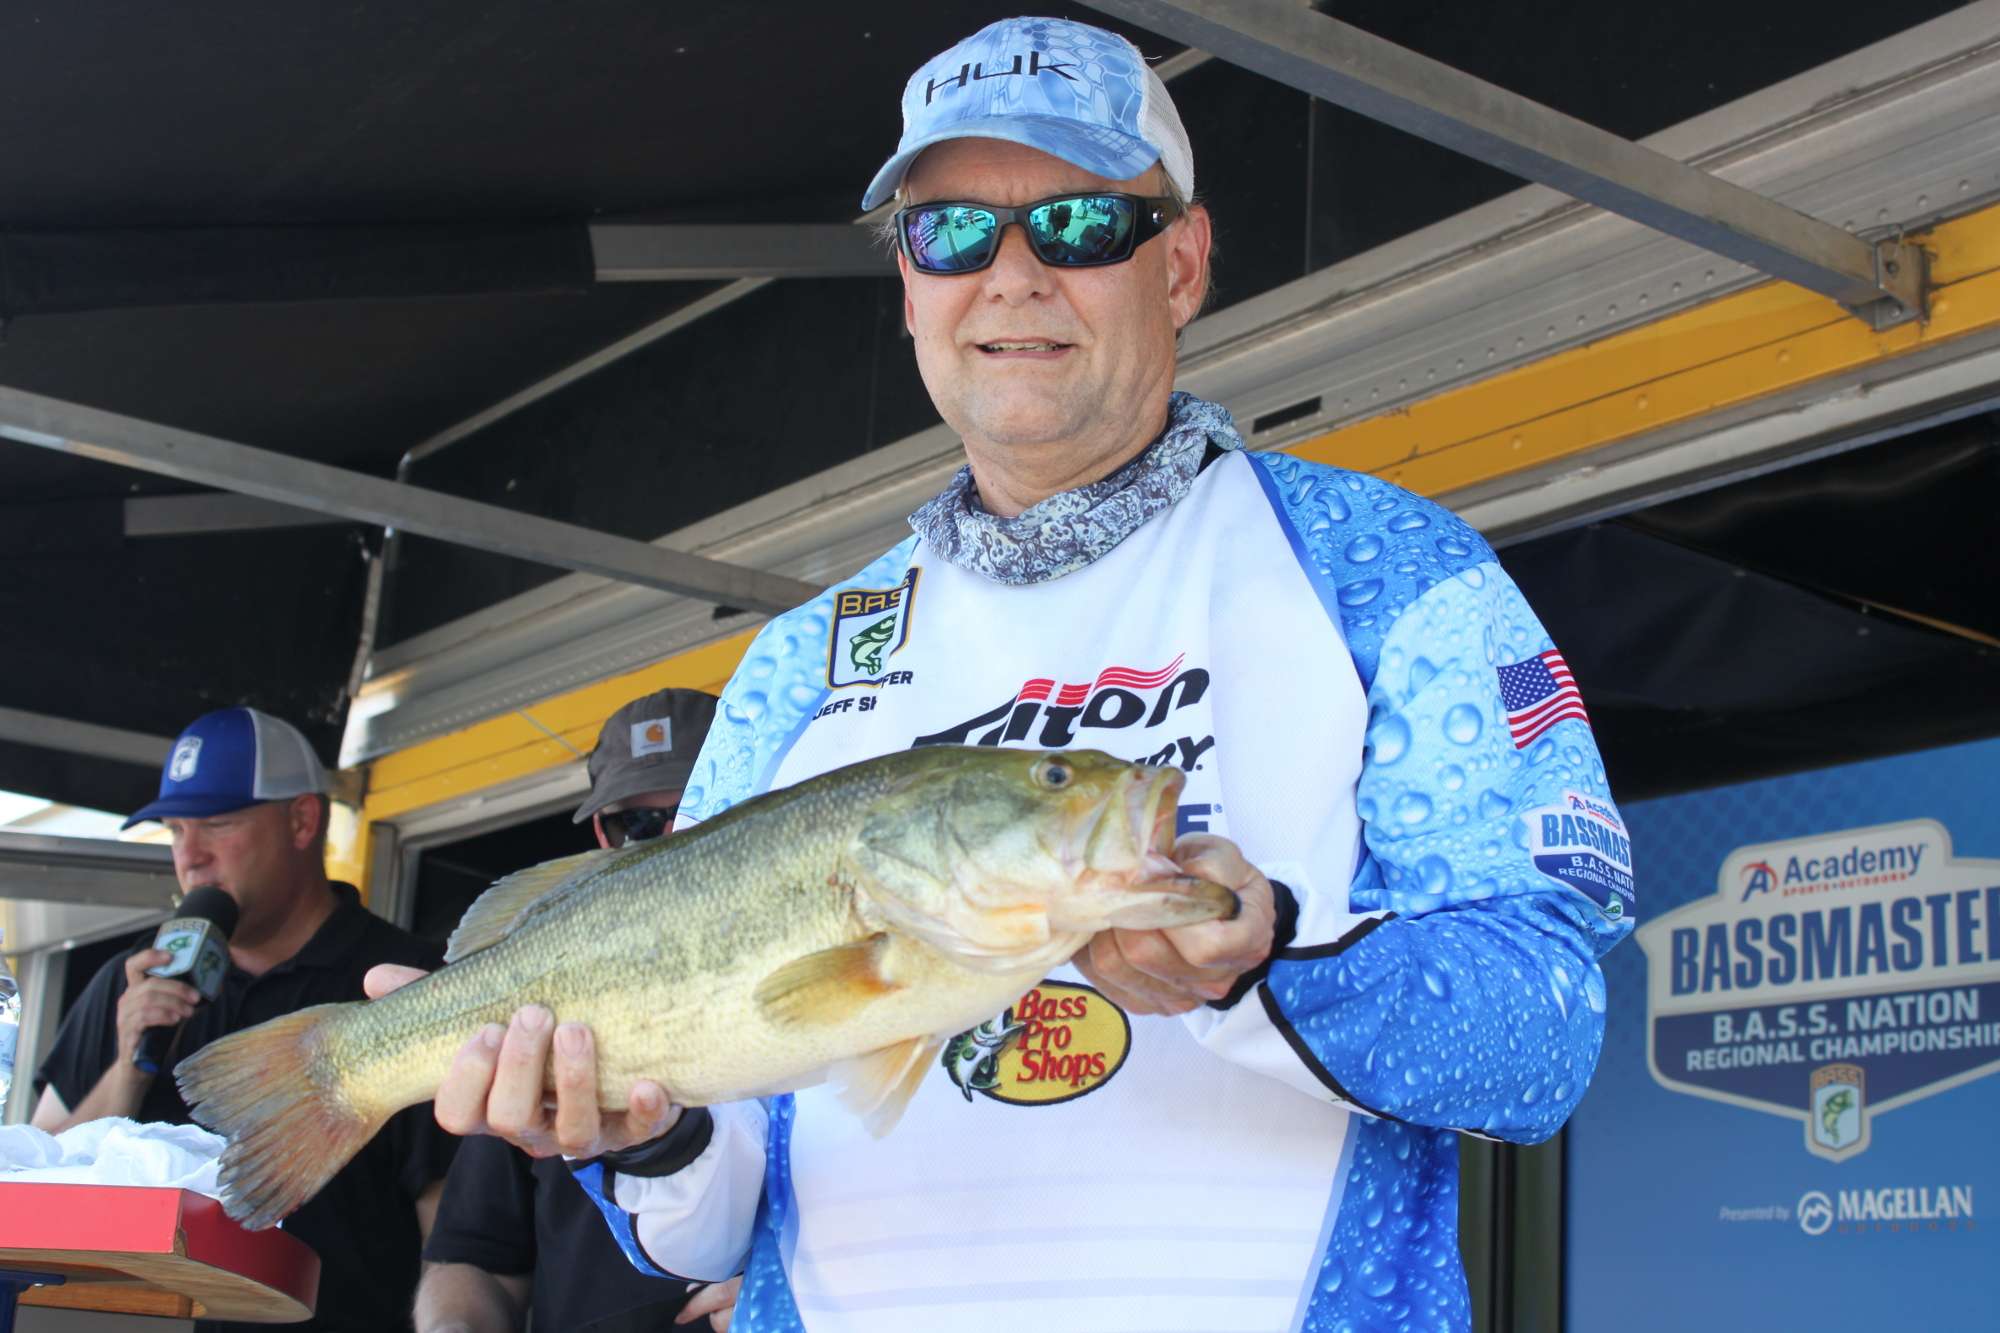 Floridaâs Jeffrey Shaffer caught this 4-15 bass on Thursday. He leads Sunshine State non-boaters with a two-day total of 9-10.